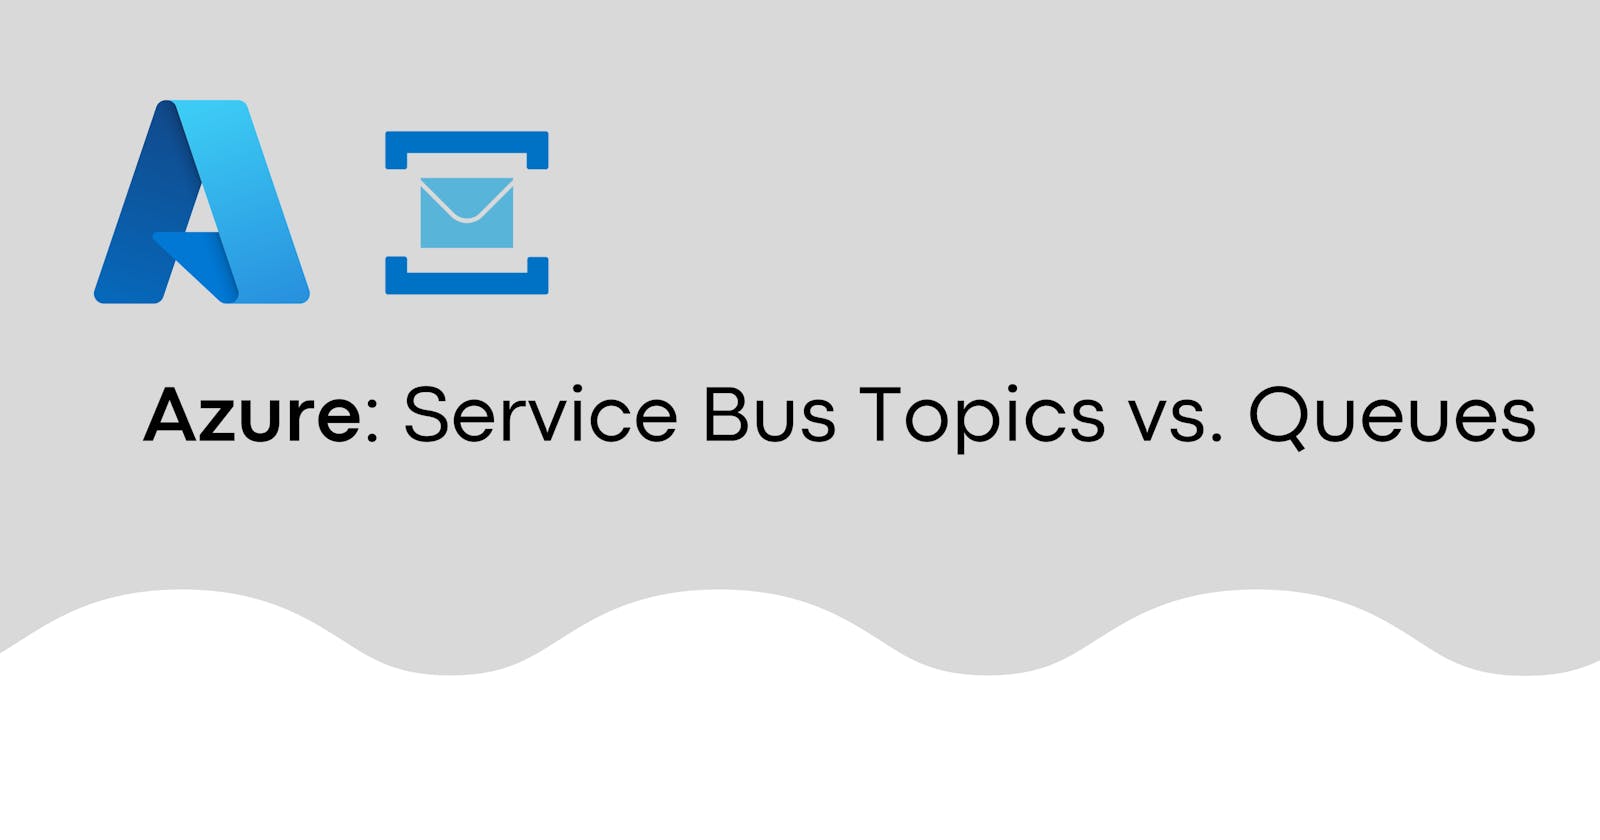 Azure: Service Bus Topics vs. Queues